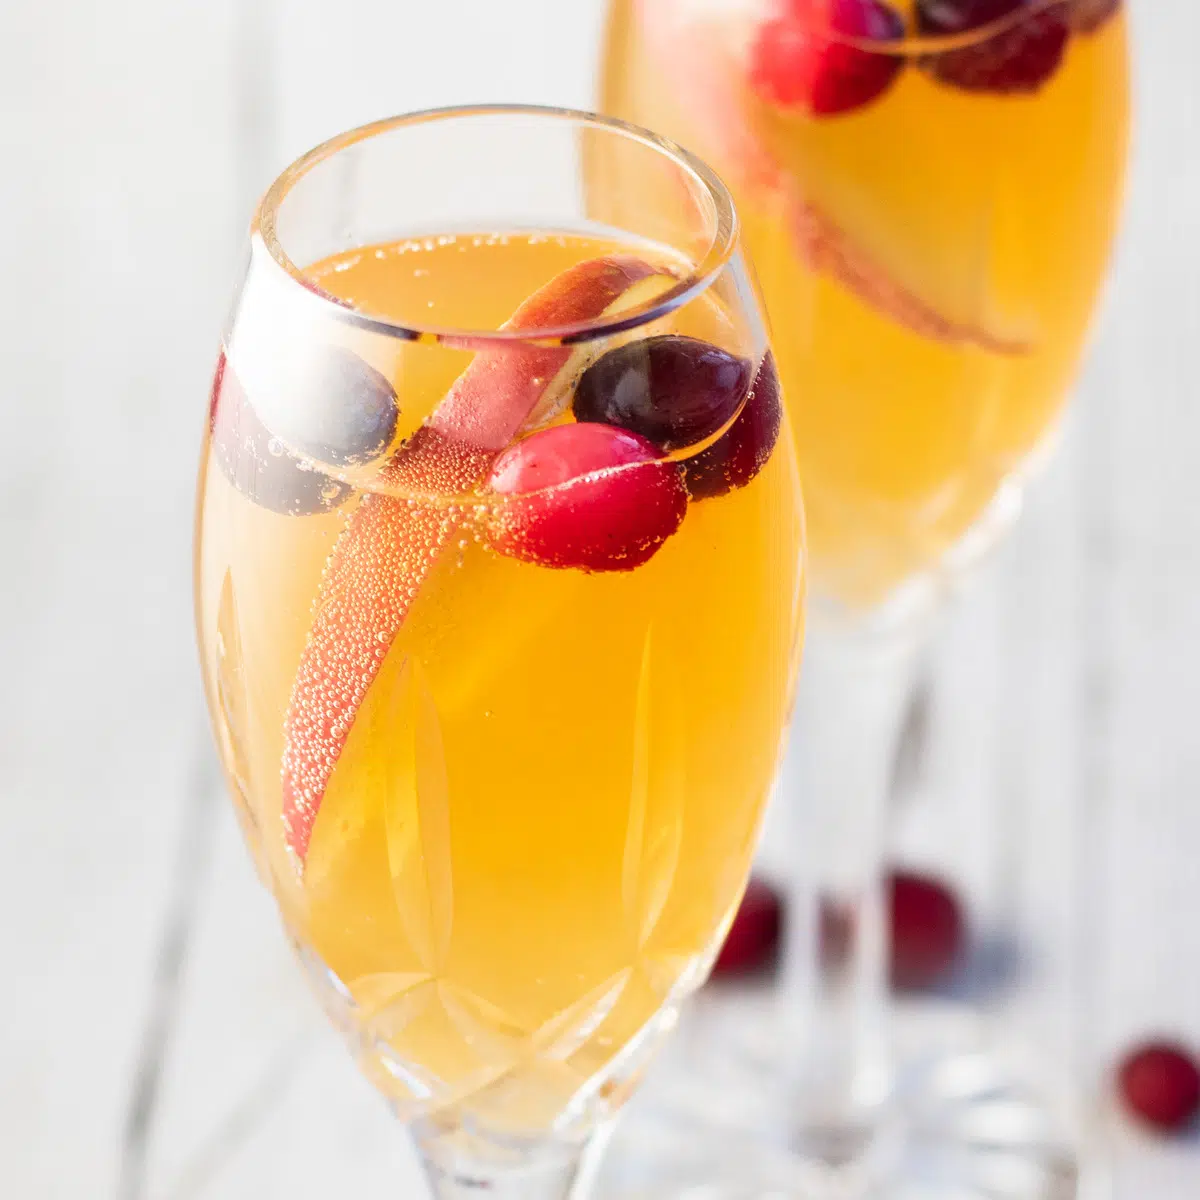 Dilimlenmiş elma ve kızılcık garnitürlü şampanya flütlerinde Mimoza kokteylleri.